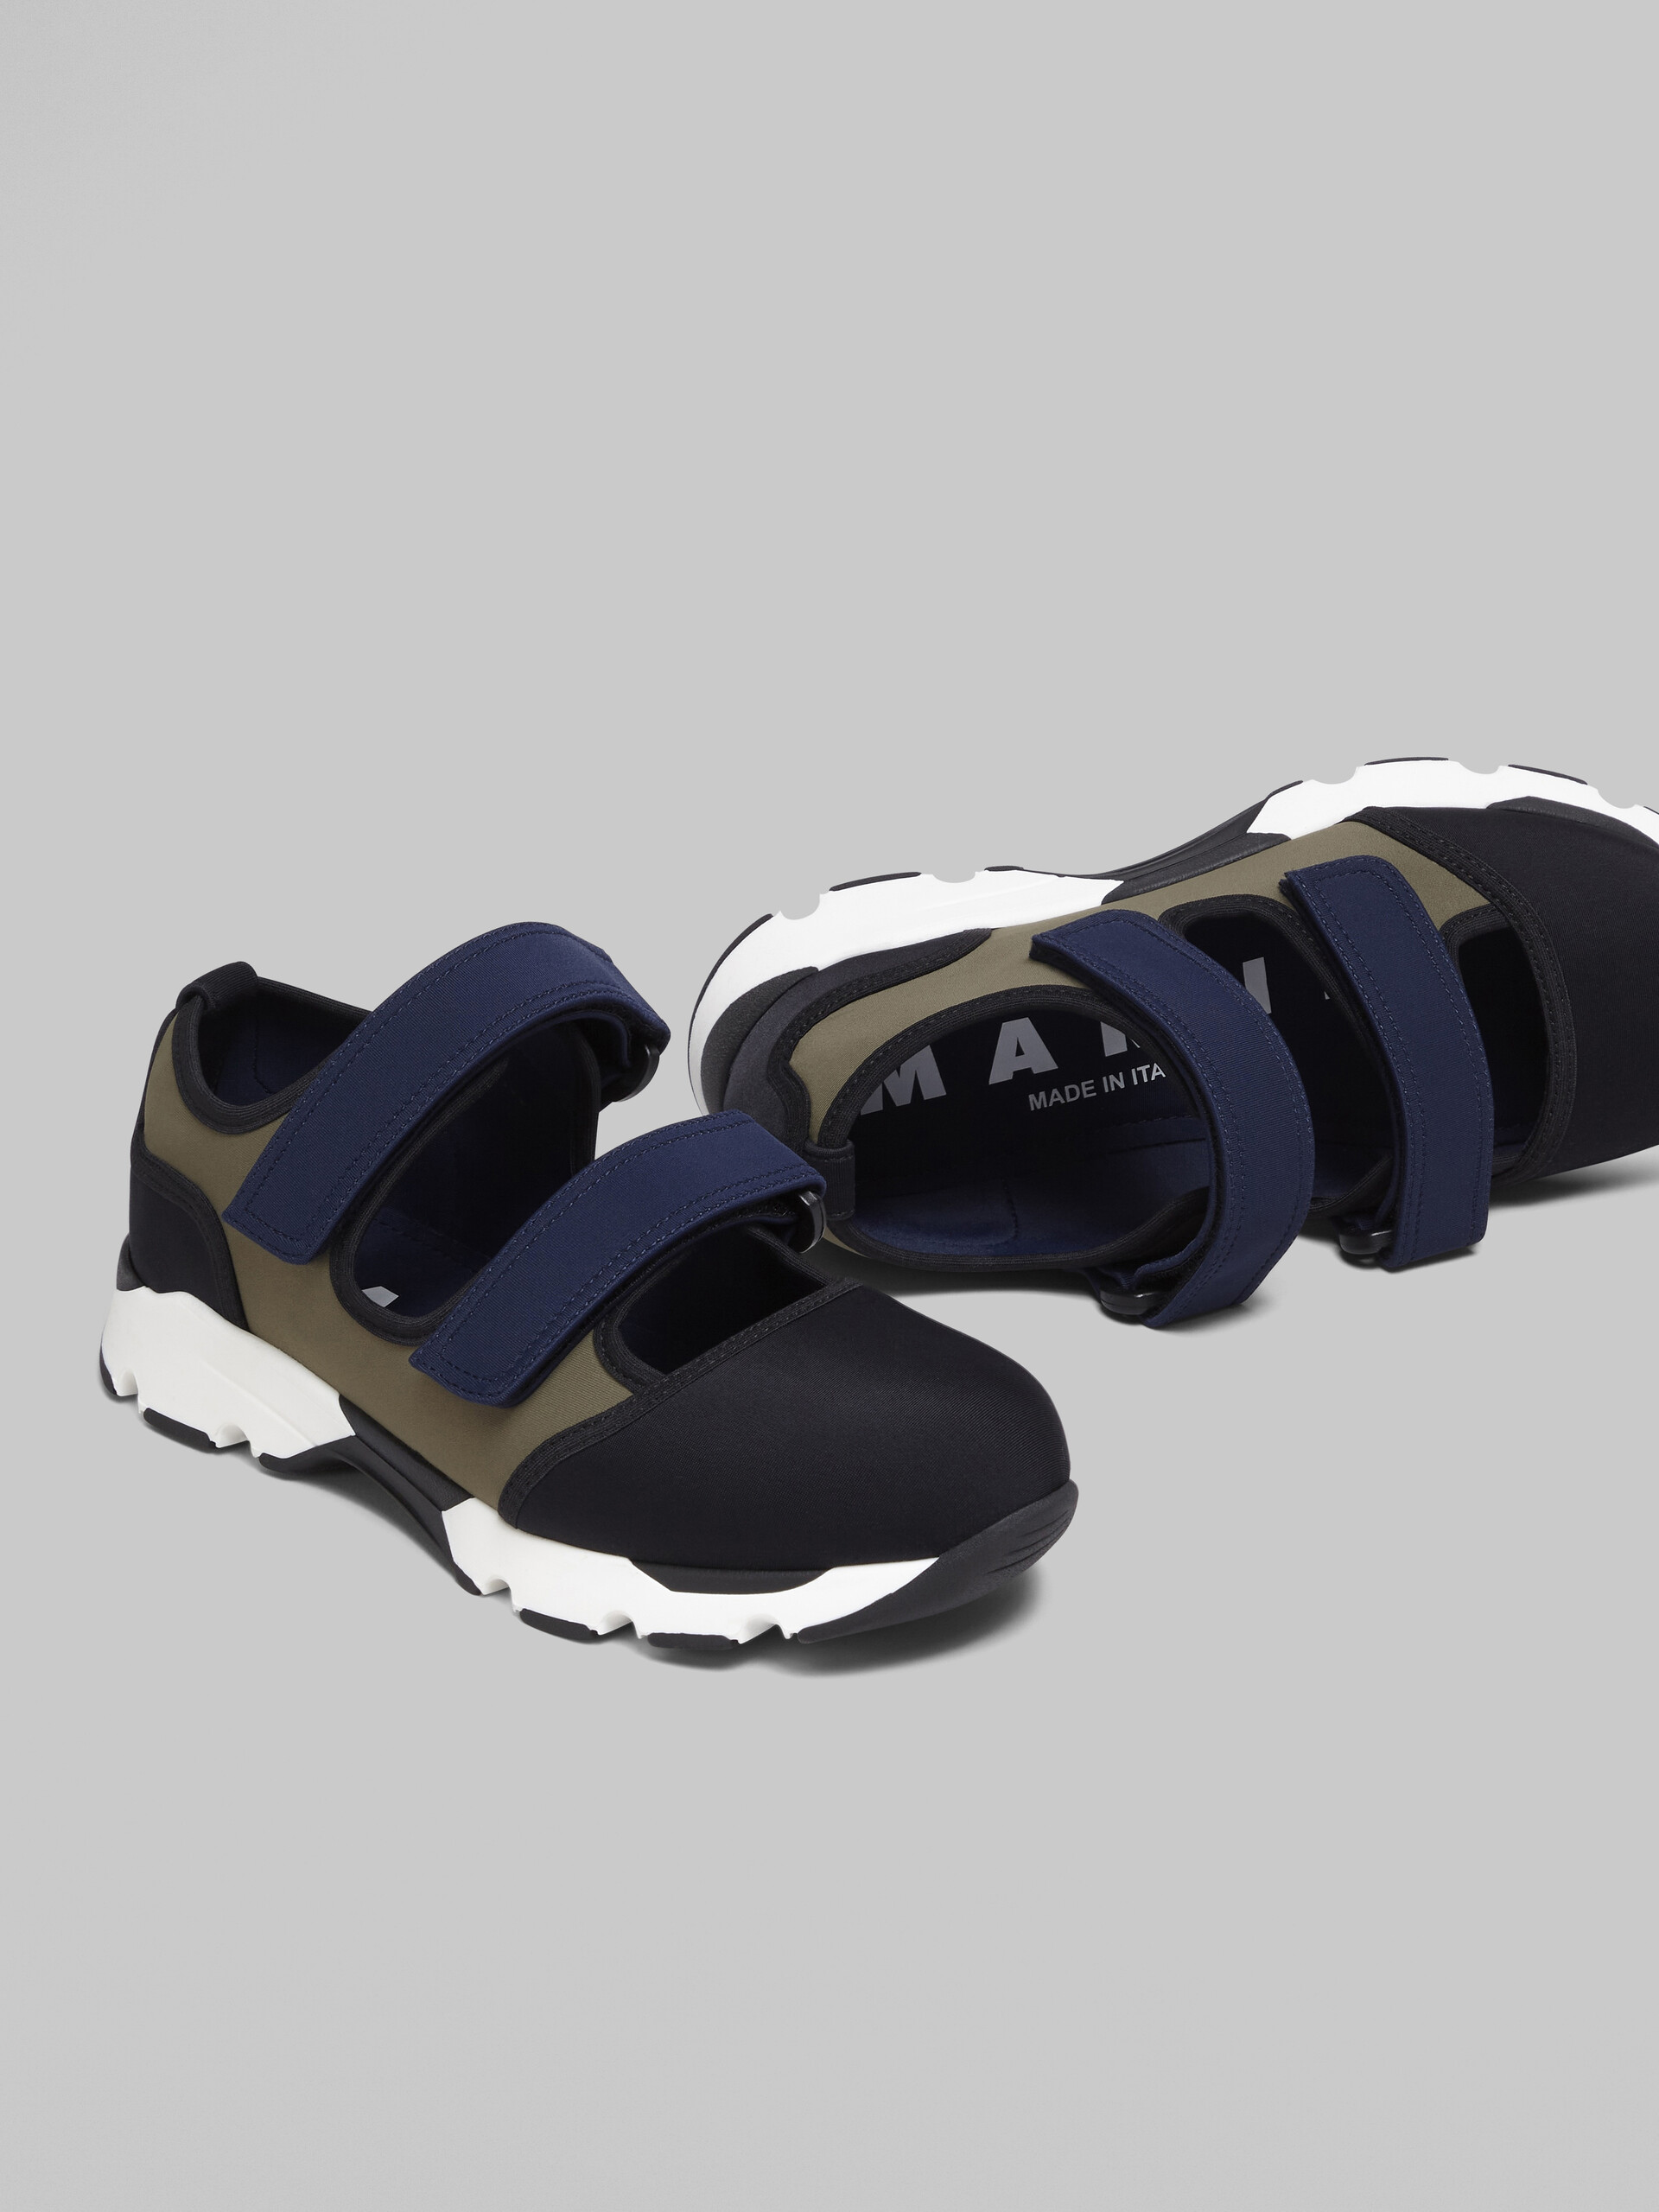 Sneaker in tessuto tecnico con chiusure a strappo nero verde e blu - Sneakers - Image 5